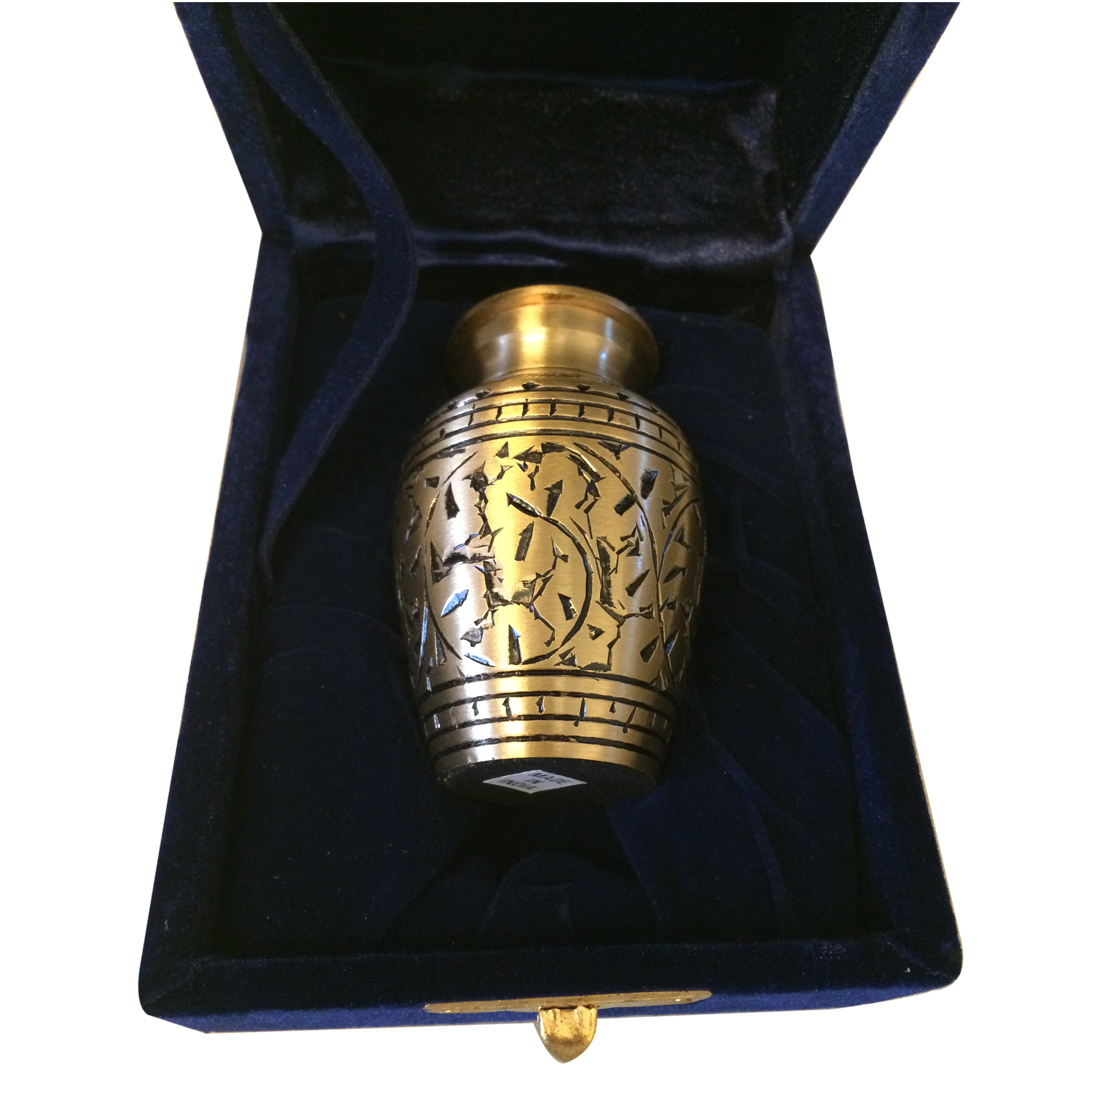 ashes keepsake urn cremation leaves urns seller